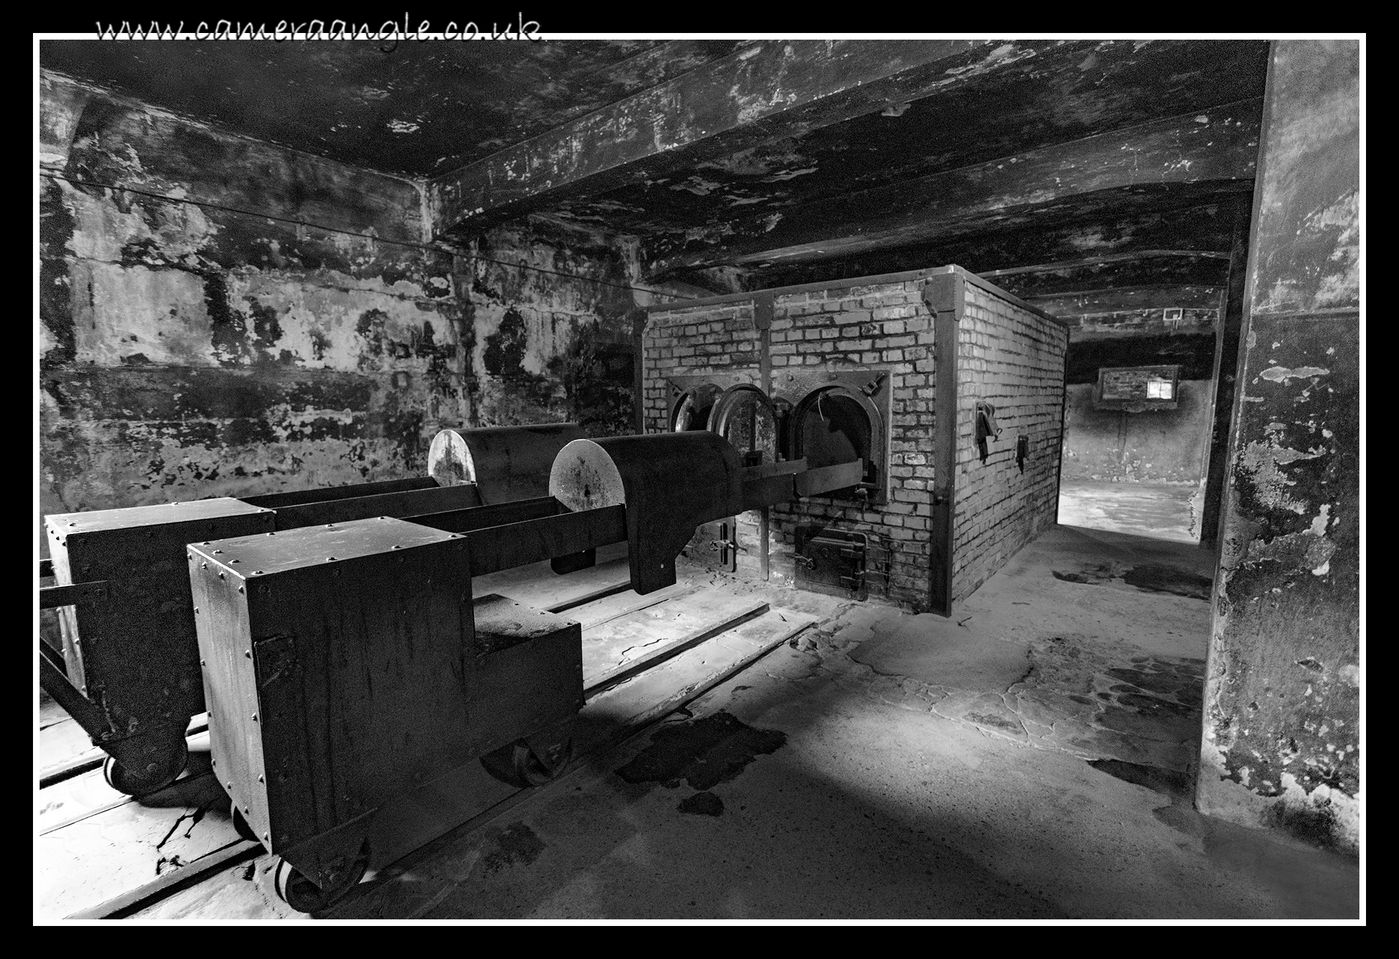 Auschwitz Gas Chamber Incinerator
Keywords: Auschwitz Gas Chamber 2019 Krakow